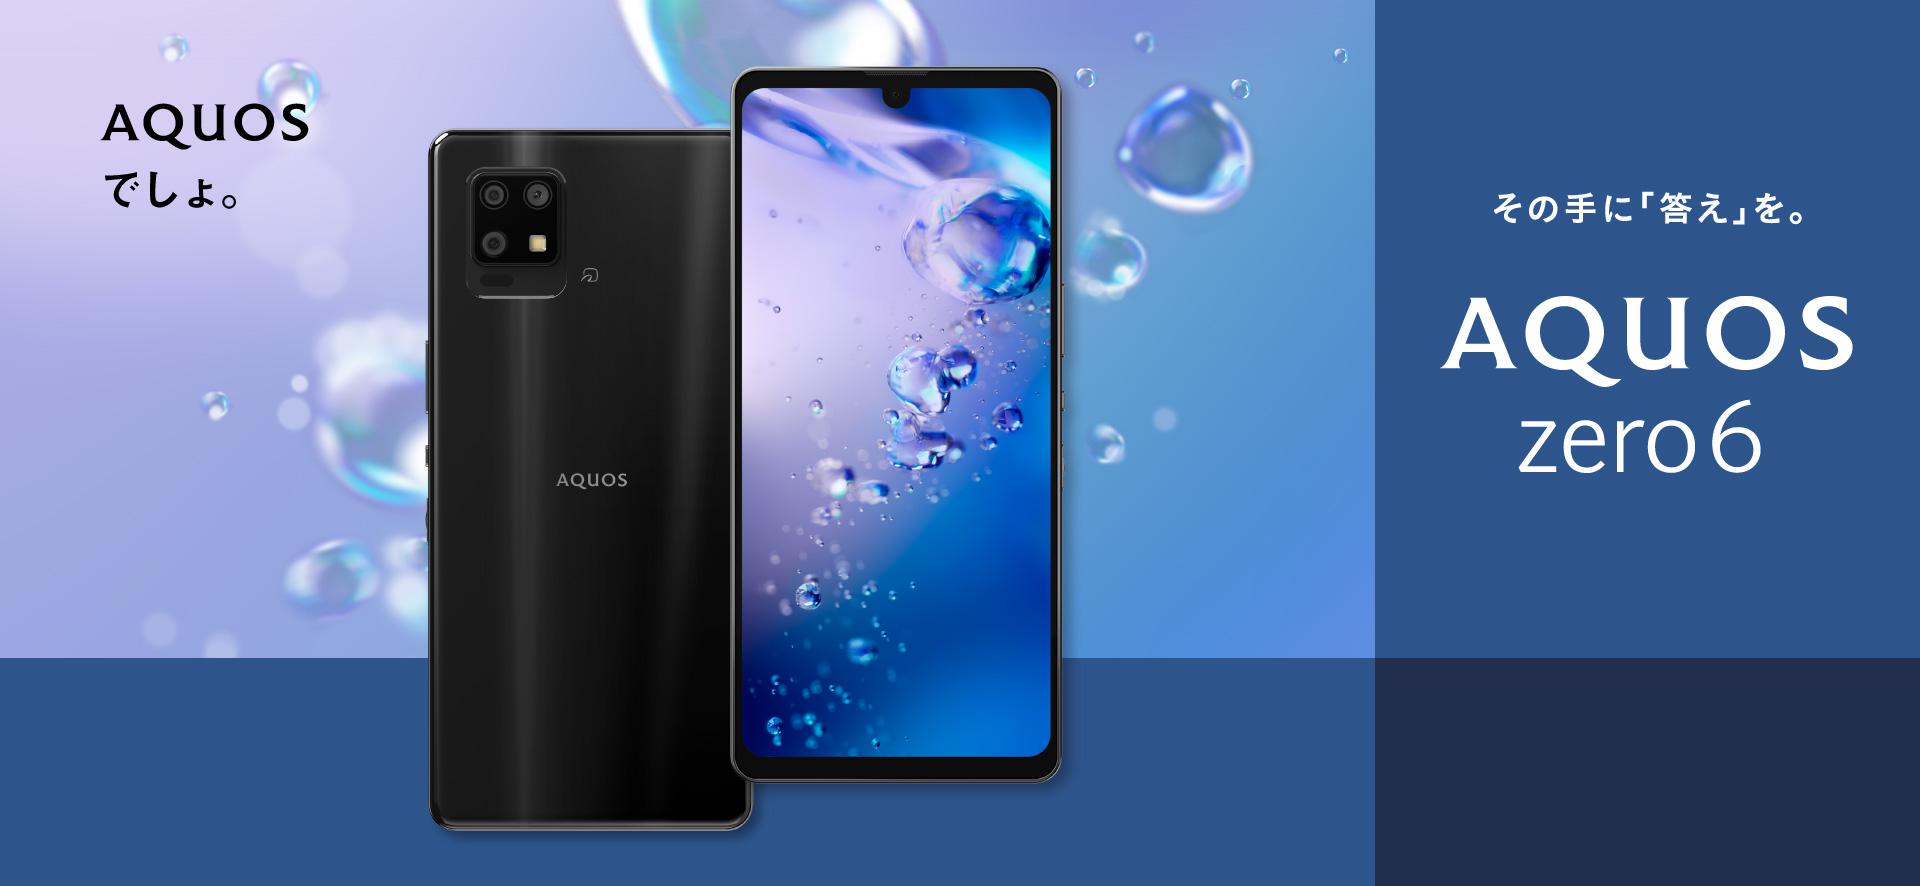 Sharp anuncia el precio del smartphone AQUOS Zero 6 con pantalla de 240Hz, chip Snapdragon 750G y protección IP68 